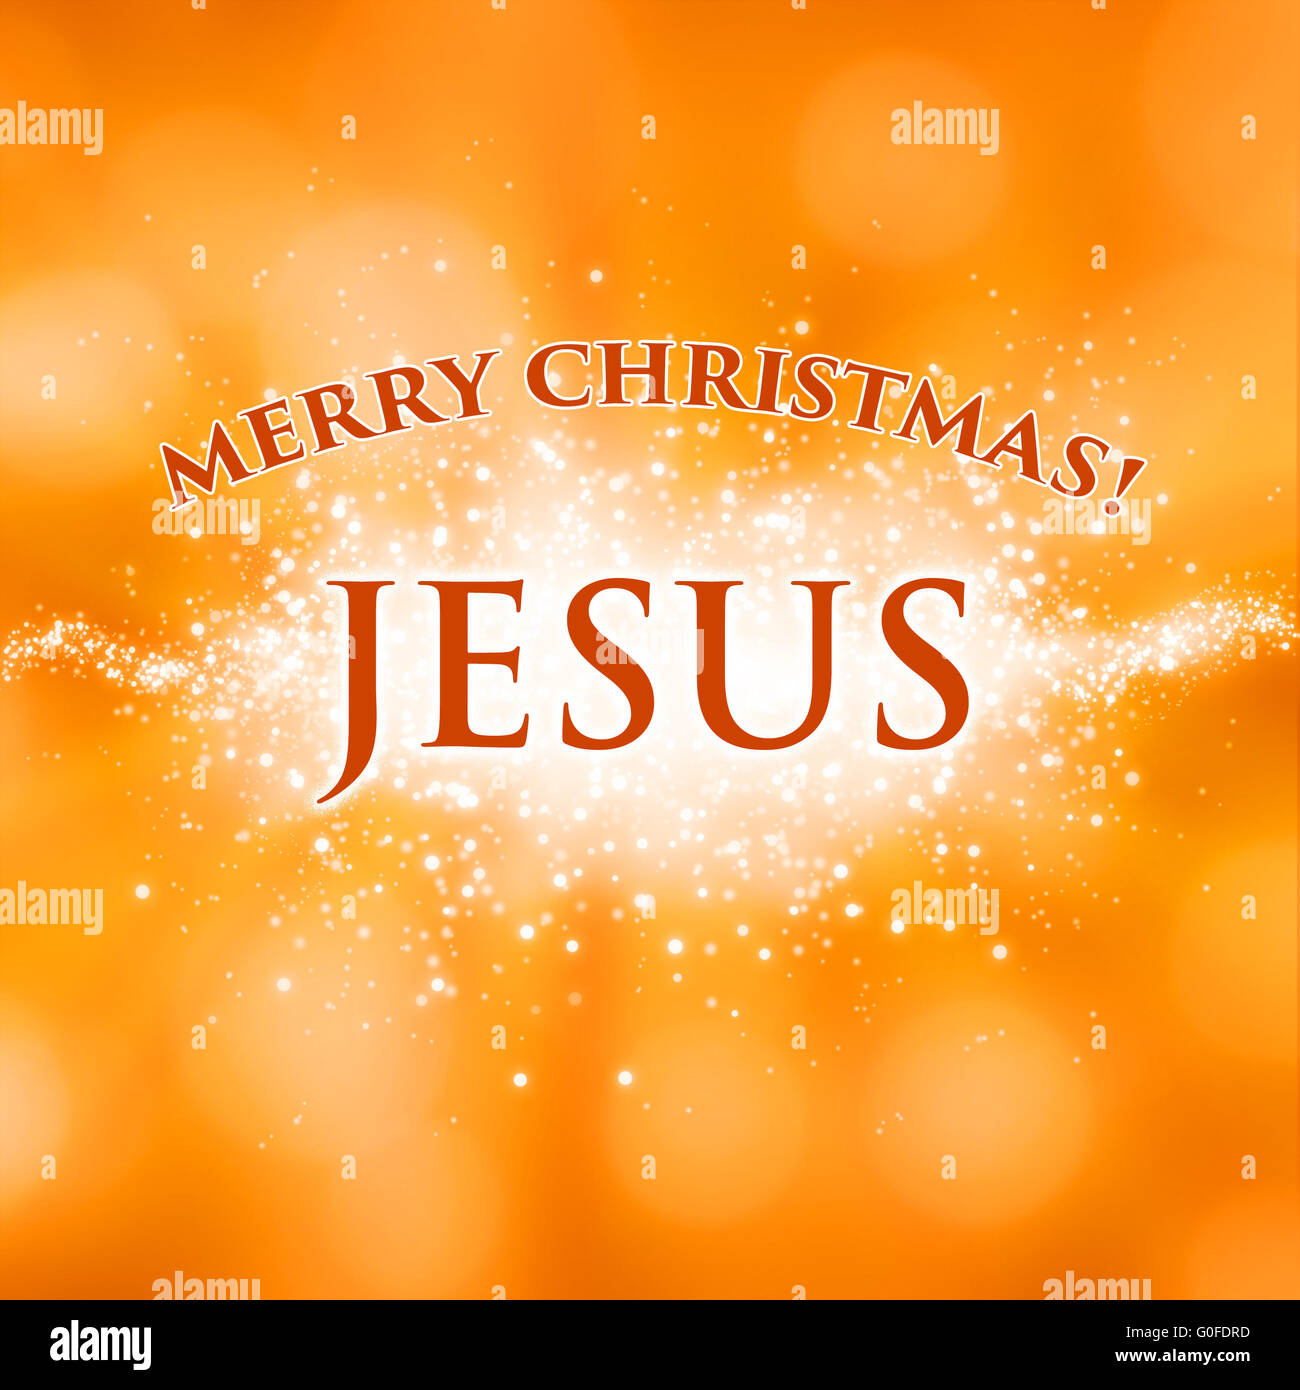 Merry Christmas Jesus greeting card Stock Photo - Alamy